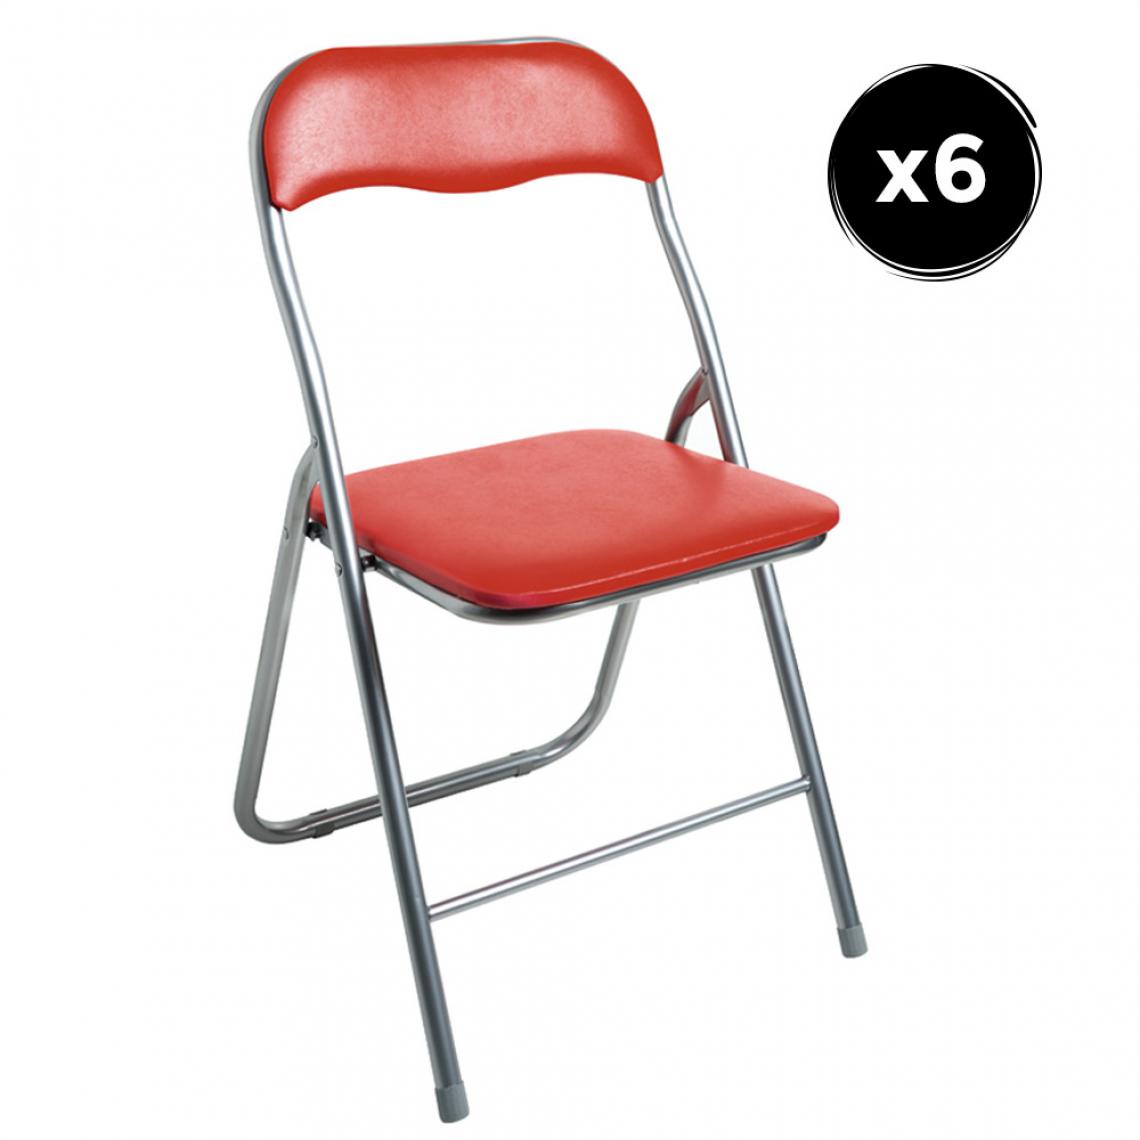 Imperial Relax - Lot de 6 chaises pliantes rouges - Chaises